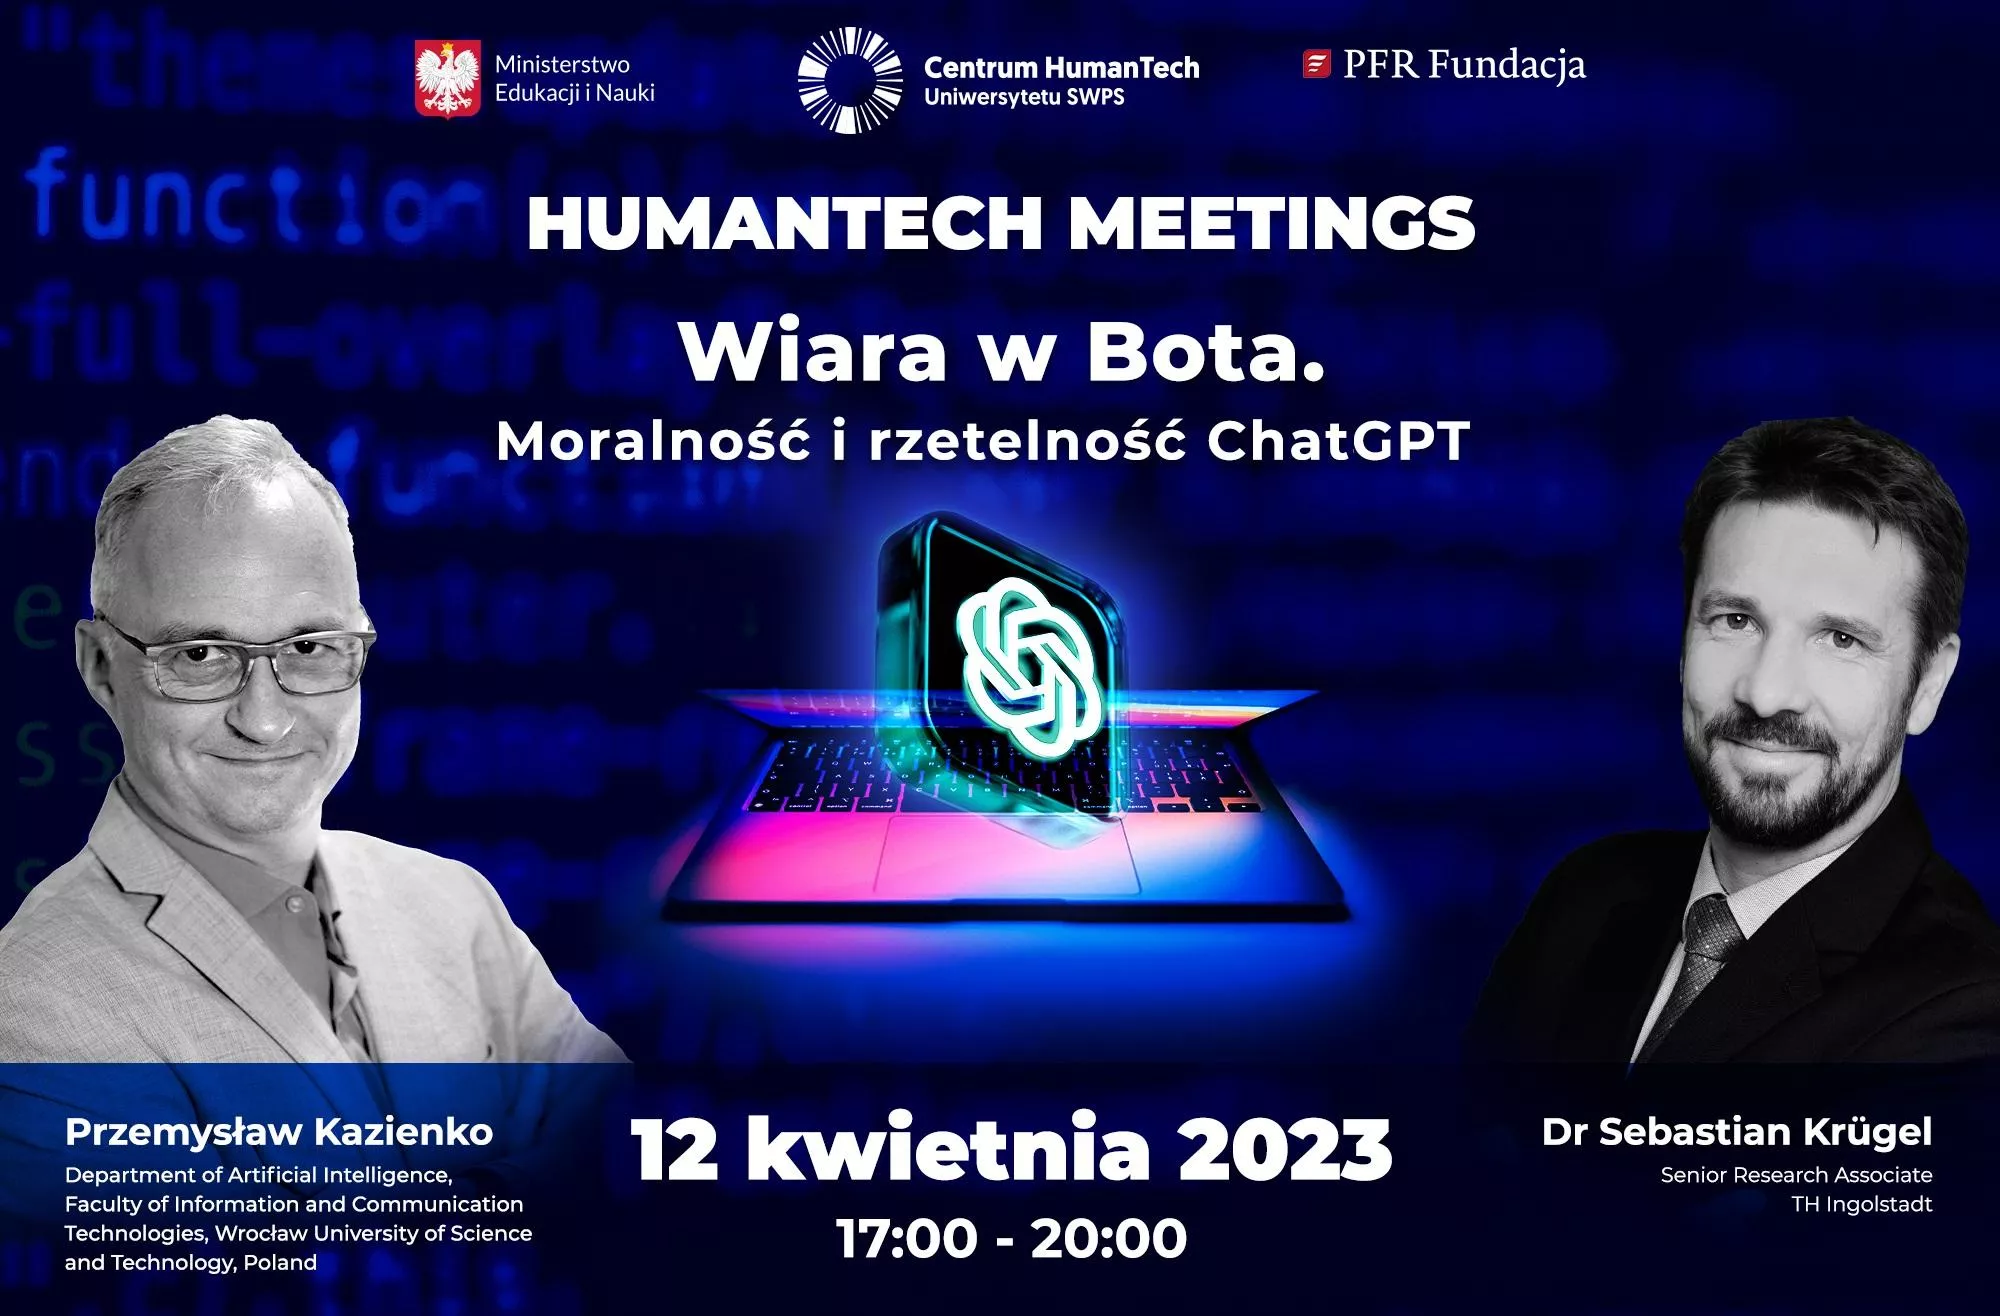 HumanTech Meetings II: Wiara w Bota. Moralność i rzetelność programu ChatGPT